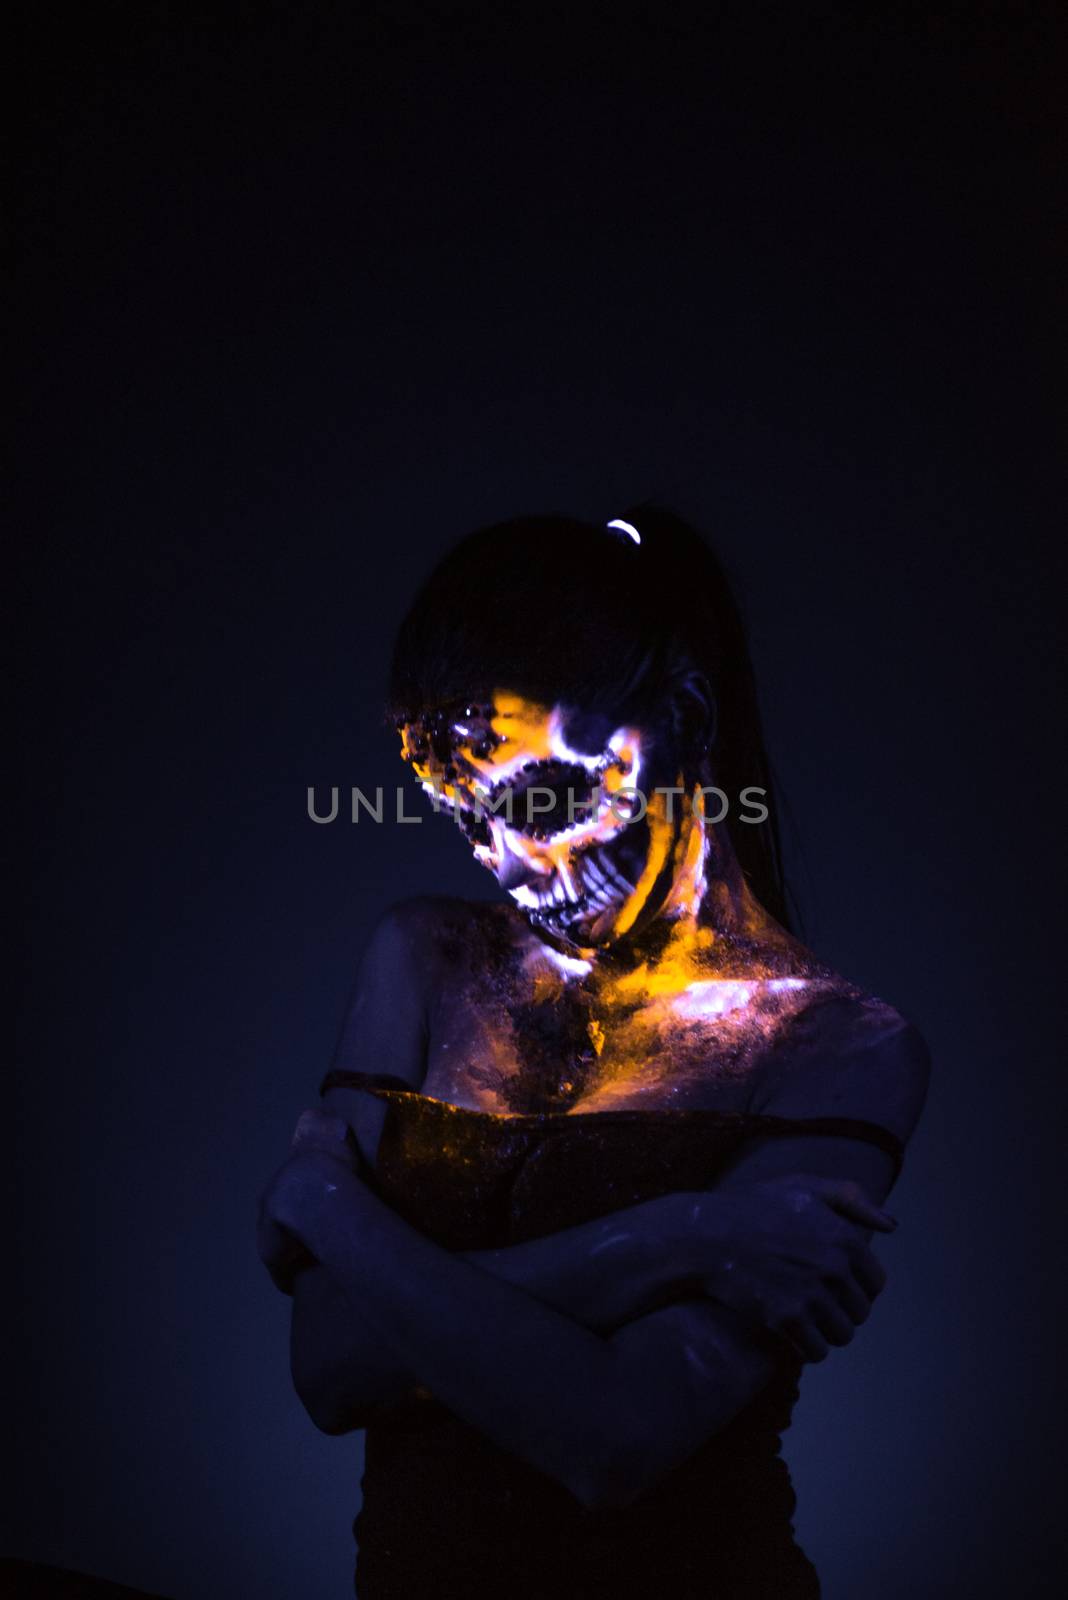 Girl's face painted UV skull by Multipedia